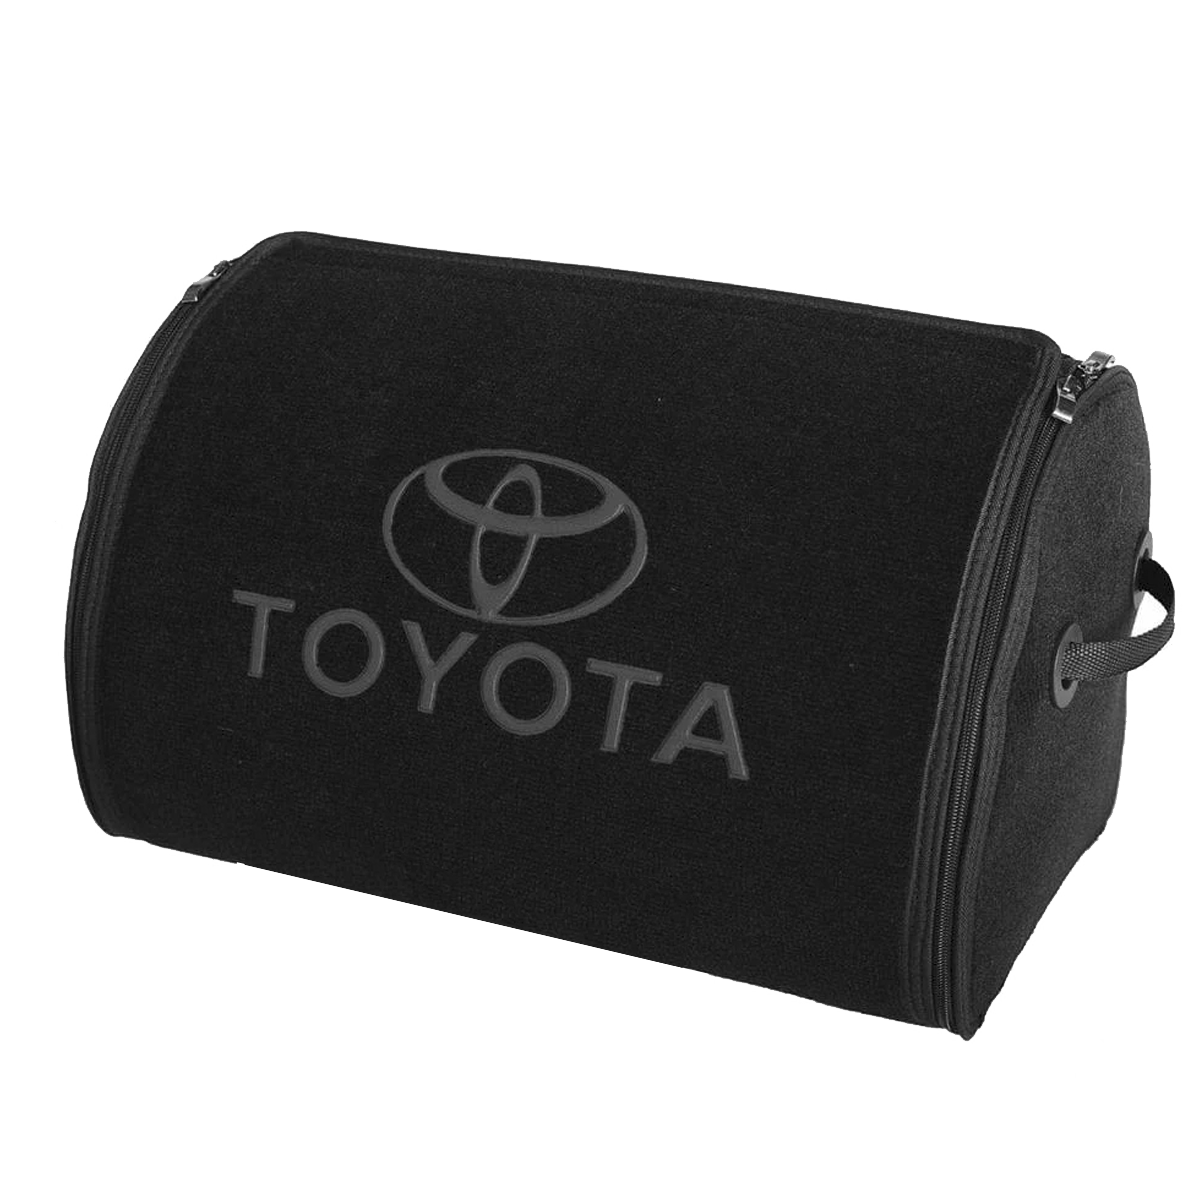 Органайзер в багажник Toyota Small Black (ST 180181-L-Black)